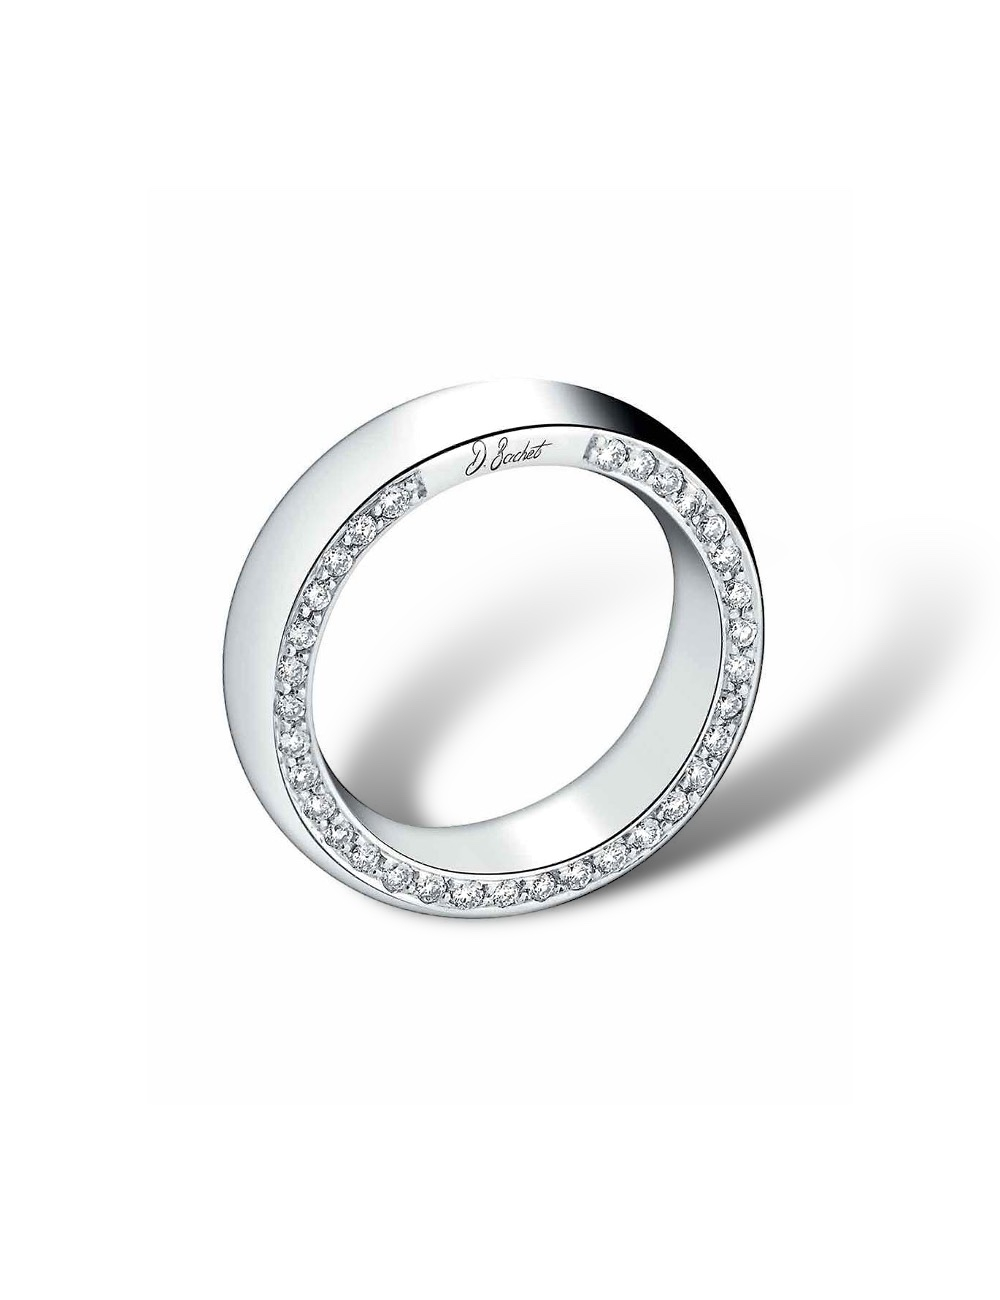 Création joaillière 'Subtile', alliance en platine avec option de diamants sur un ou deux côtés, pour hommes et femmes.